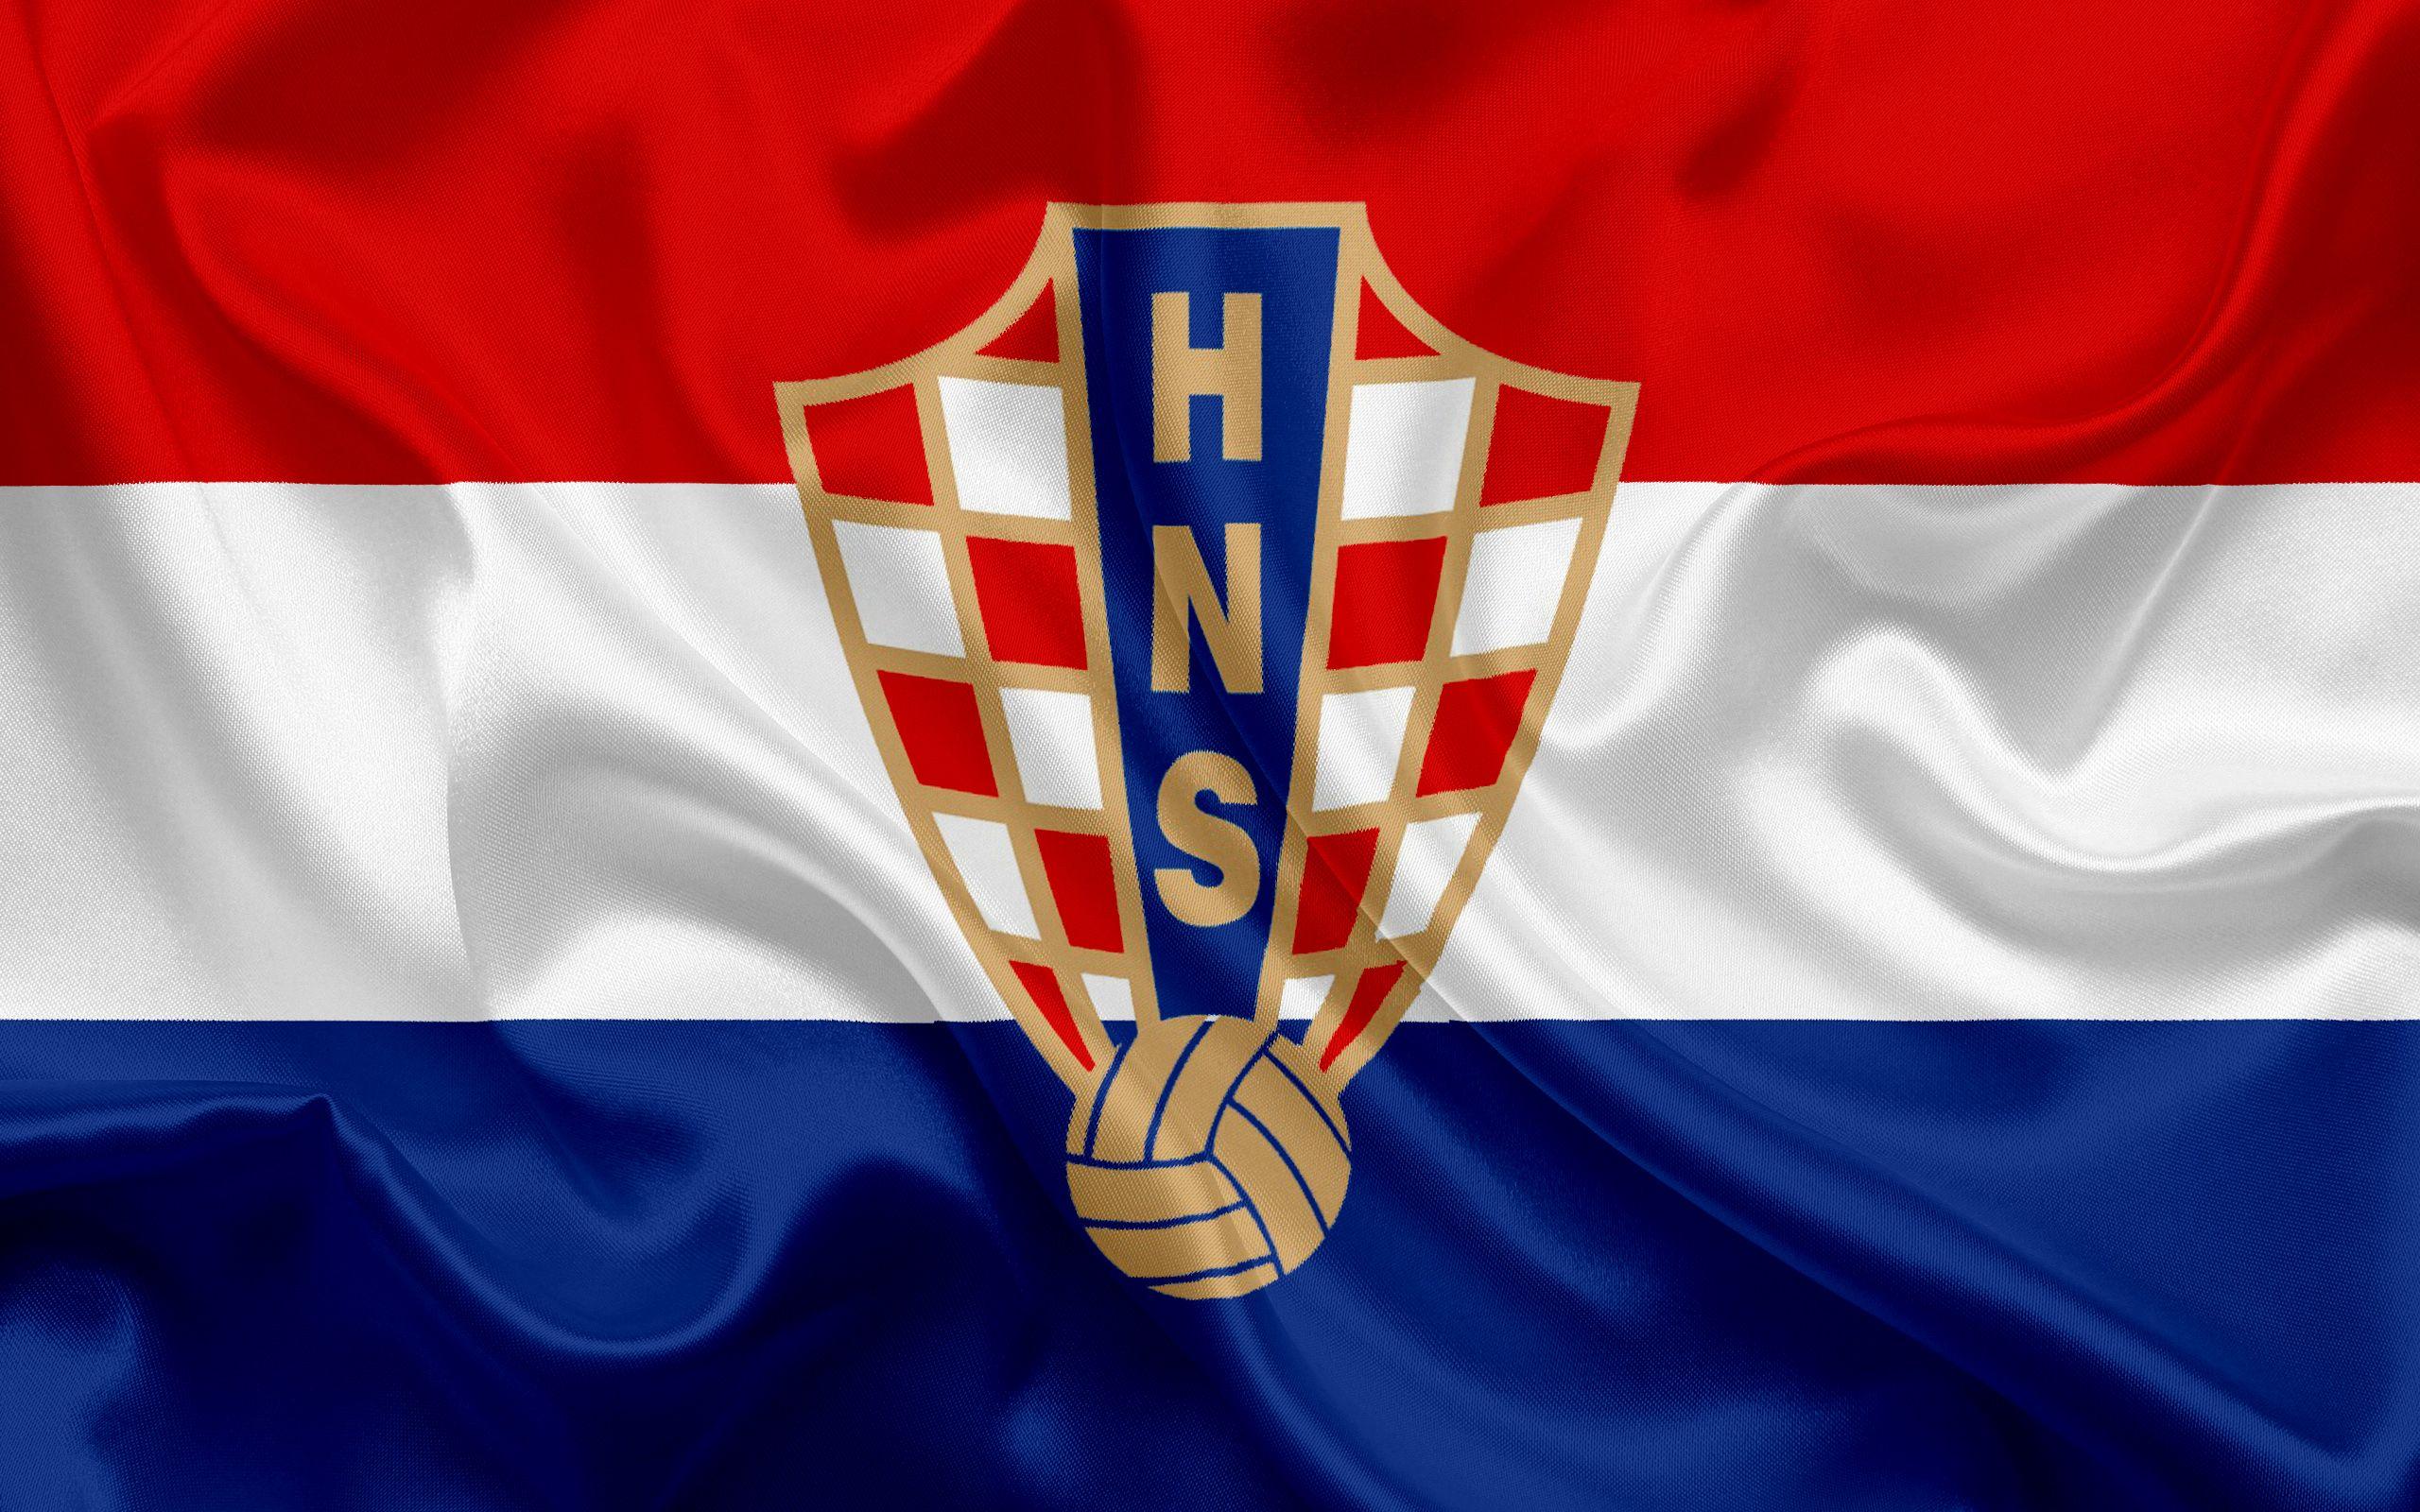 Croatia Logo - Croatia, Soccer, Emblem, Logo wallpaper and background